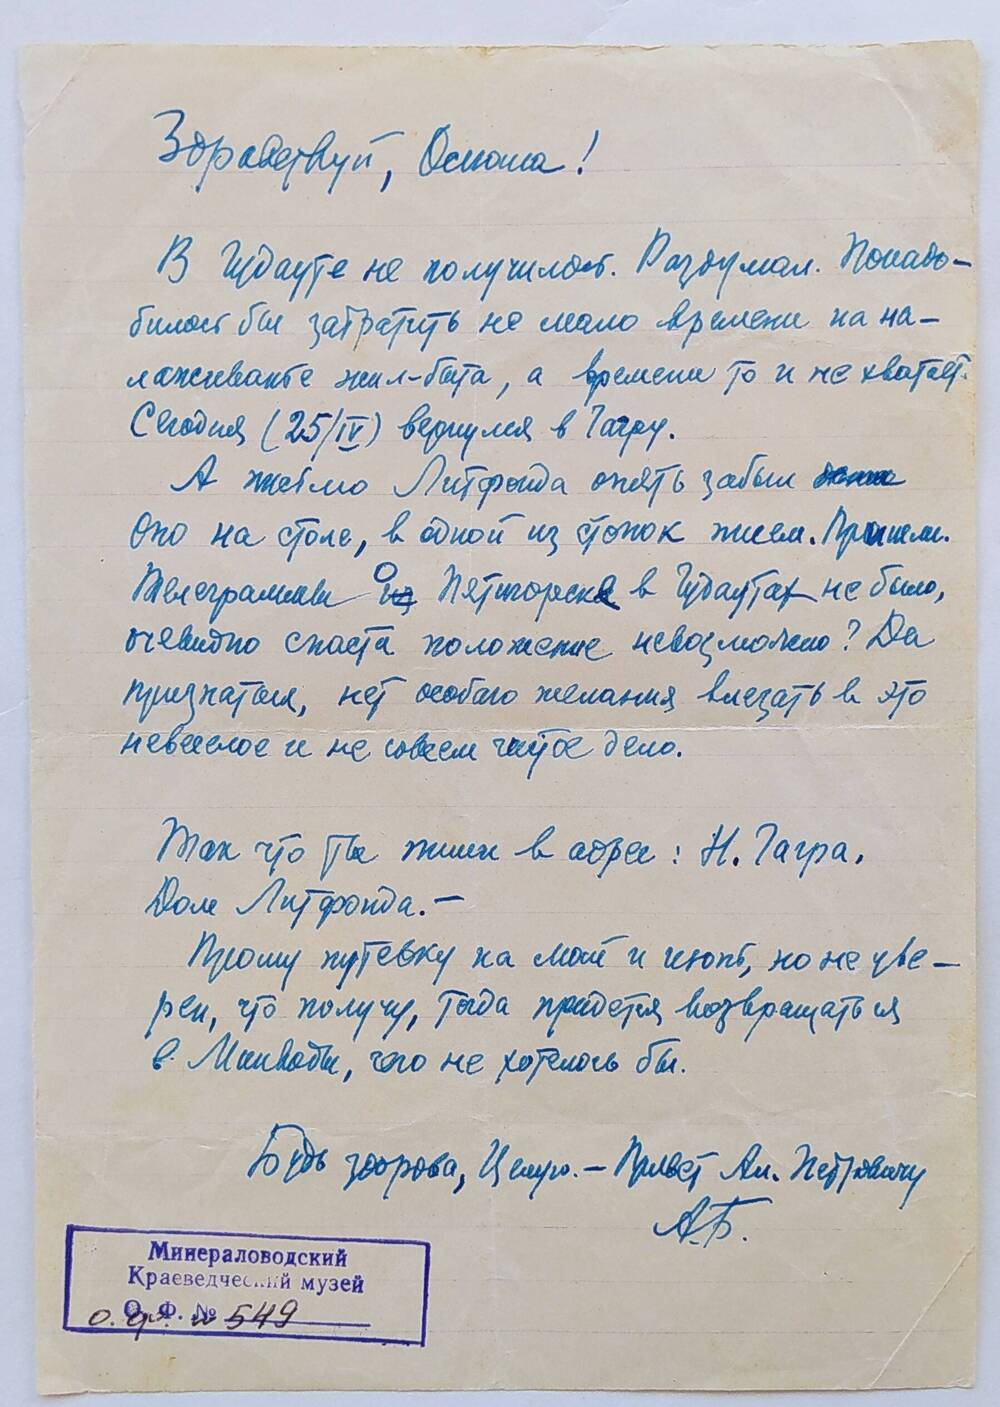 Письмо Ольге Бауэр от отца, не датировано, написано на тетрадном листе в линию, чернильной ручкой синего цвета.